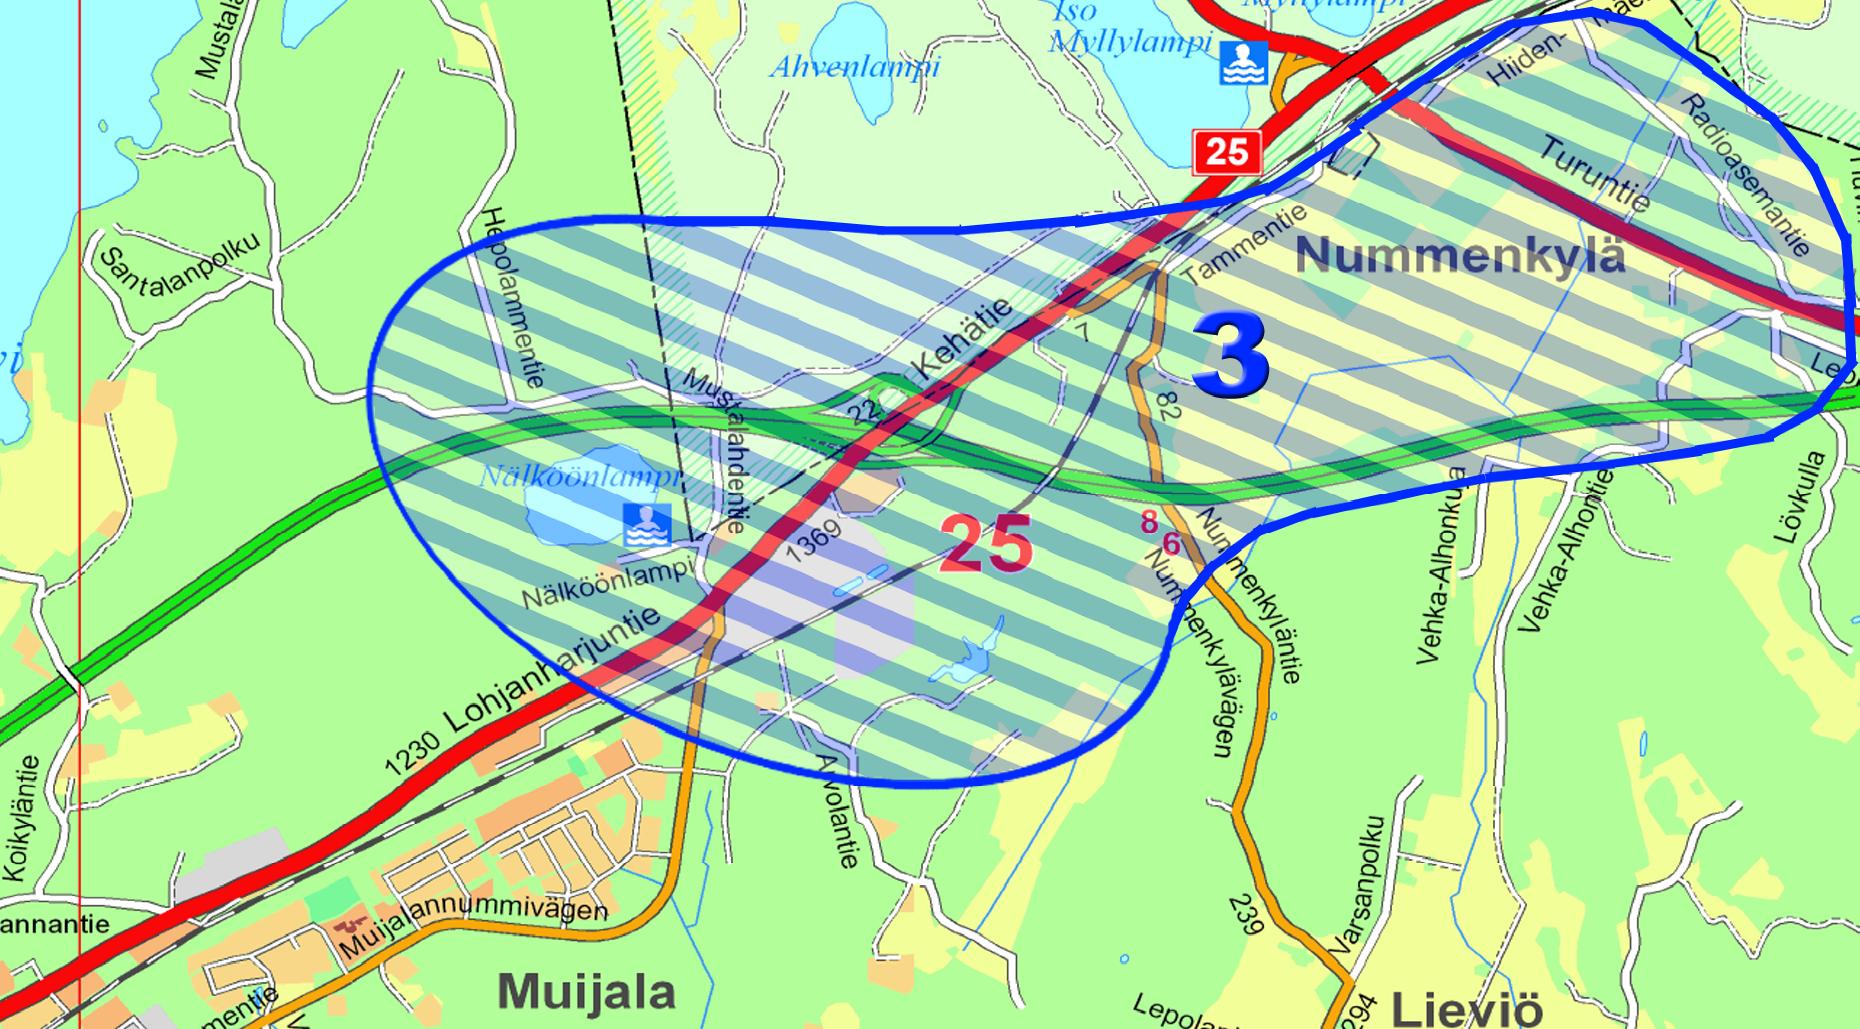 3. Nummenkylän osayleiskaava Osayleiskaavan tarkoituksena on selvittää E 18 -tien Muijalan liittymän ympäristön maankäyttöä Muijalan Nummenkylän alueella.